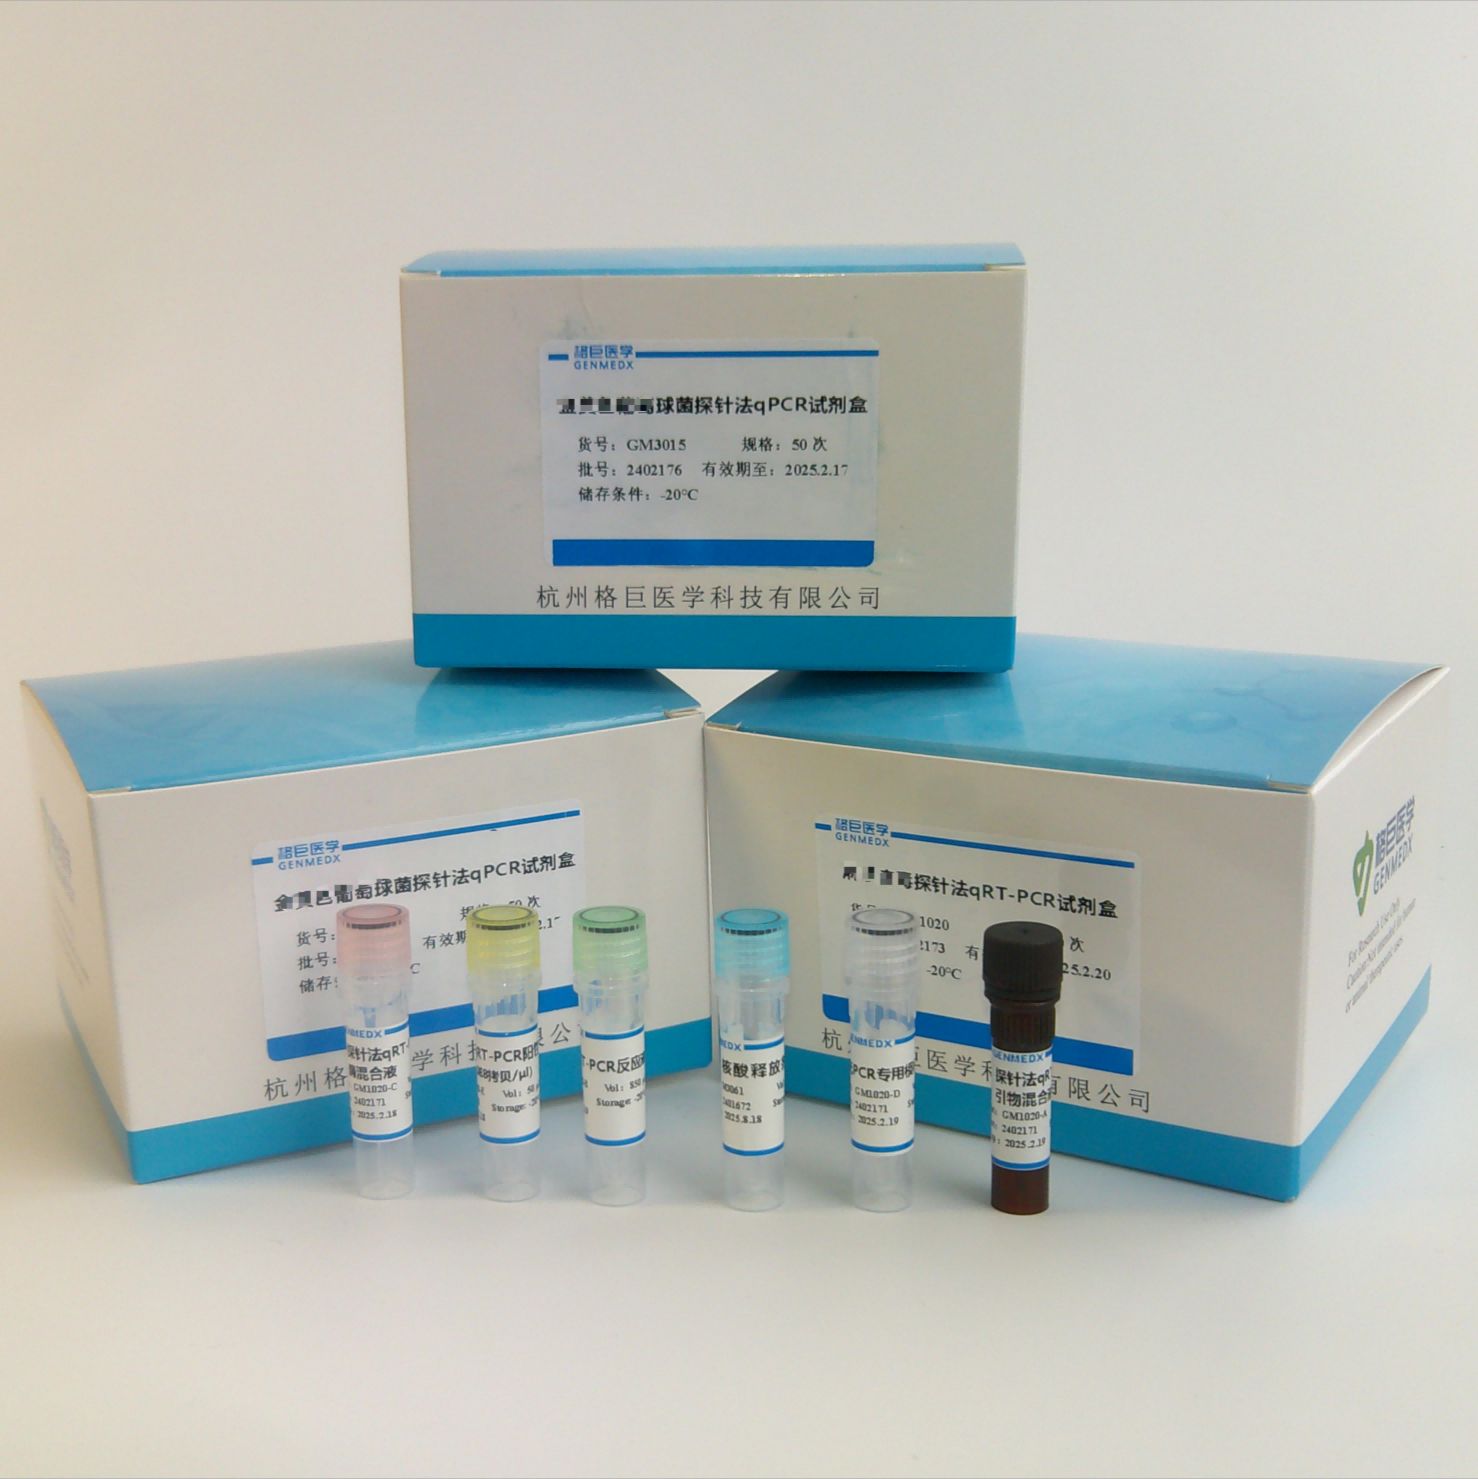 猪流行性腹泻病毒探针法荧光定量RT-PCR试剂盒